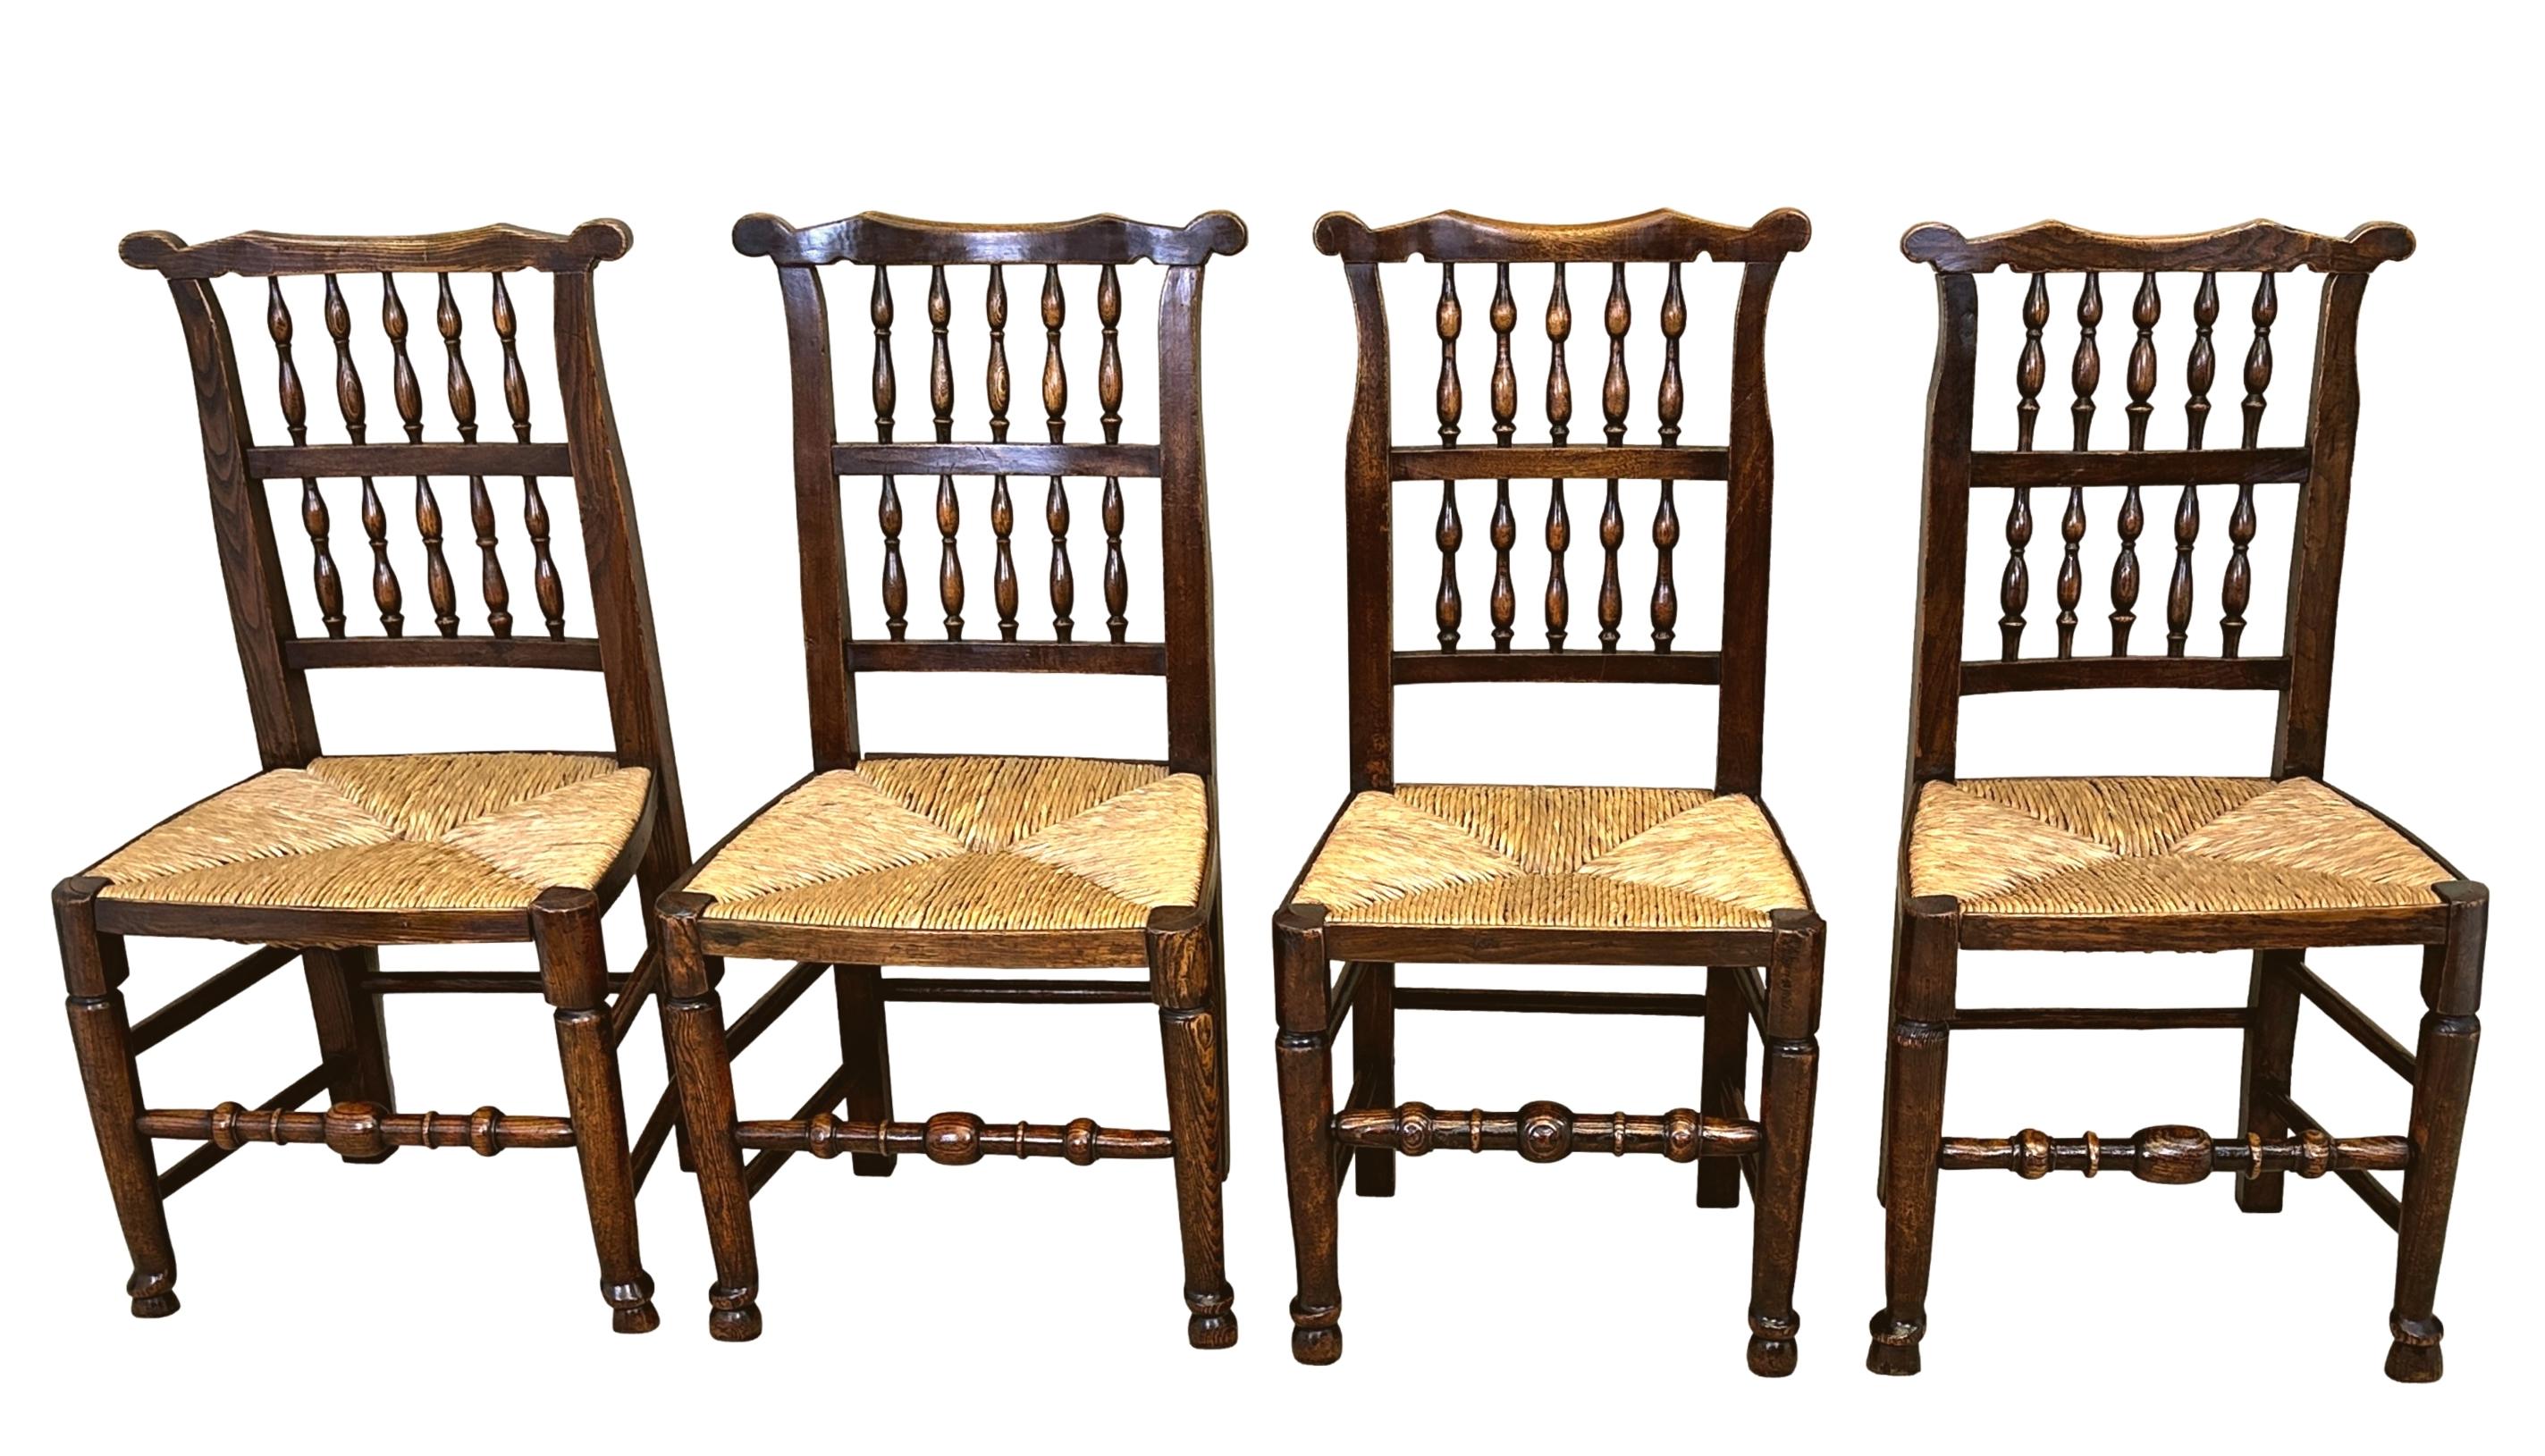 Atractivo conjunto georgiano de principios del siglo XIX de 10 sillas de comedor de cocina de granja de fresno y olmo, con orejas raras en el riel superior de los respaldos de huso de doble hilera, sobre asientos enrasados elevados sobre elegantes